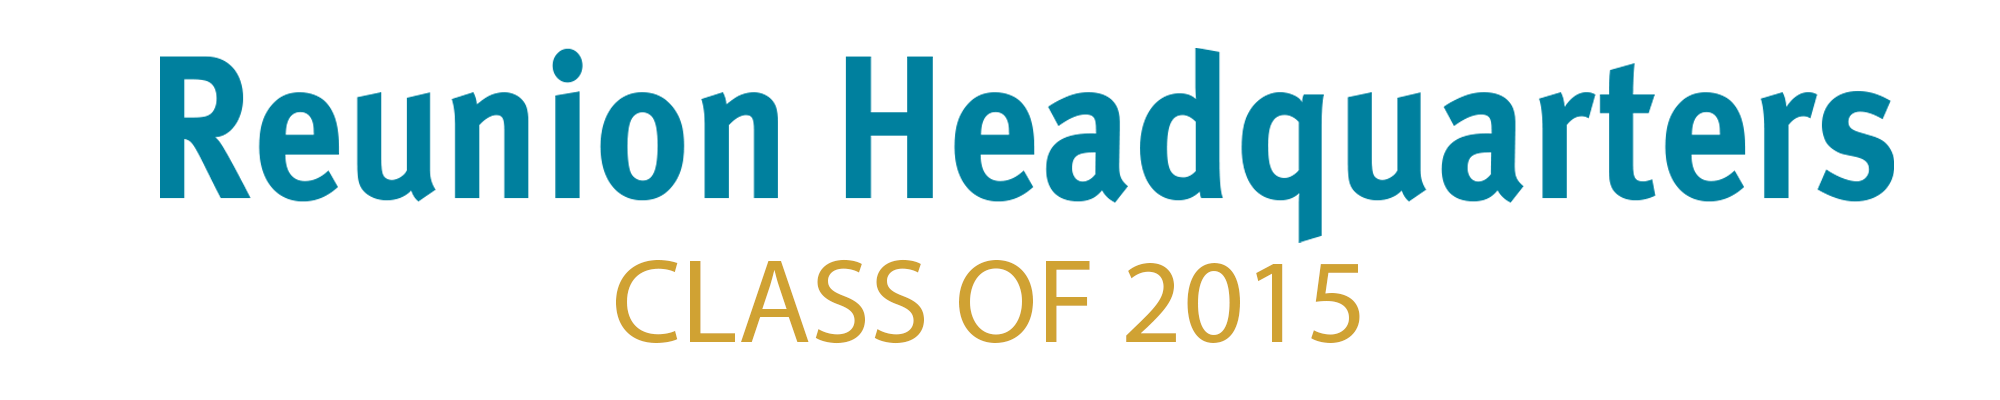 Class of 2015 Header